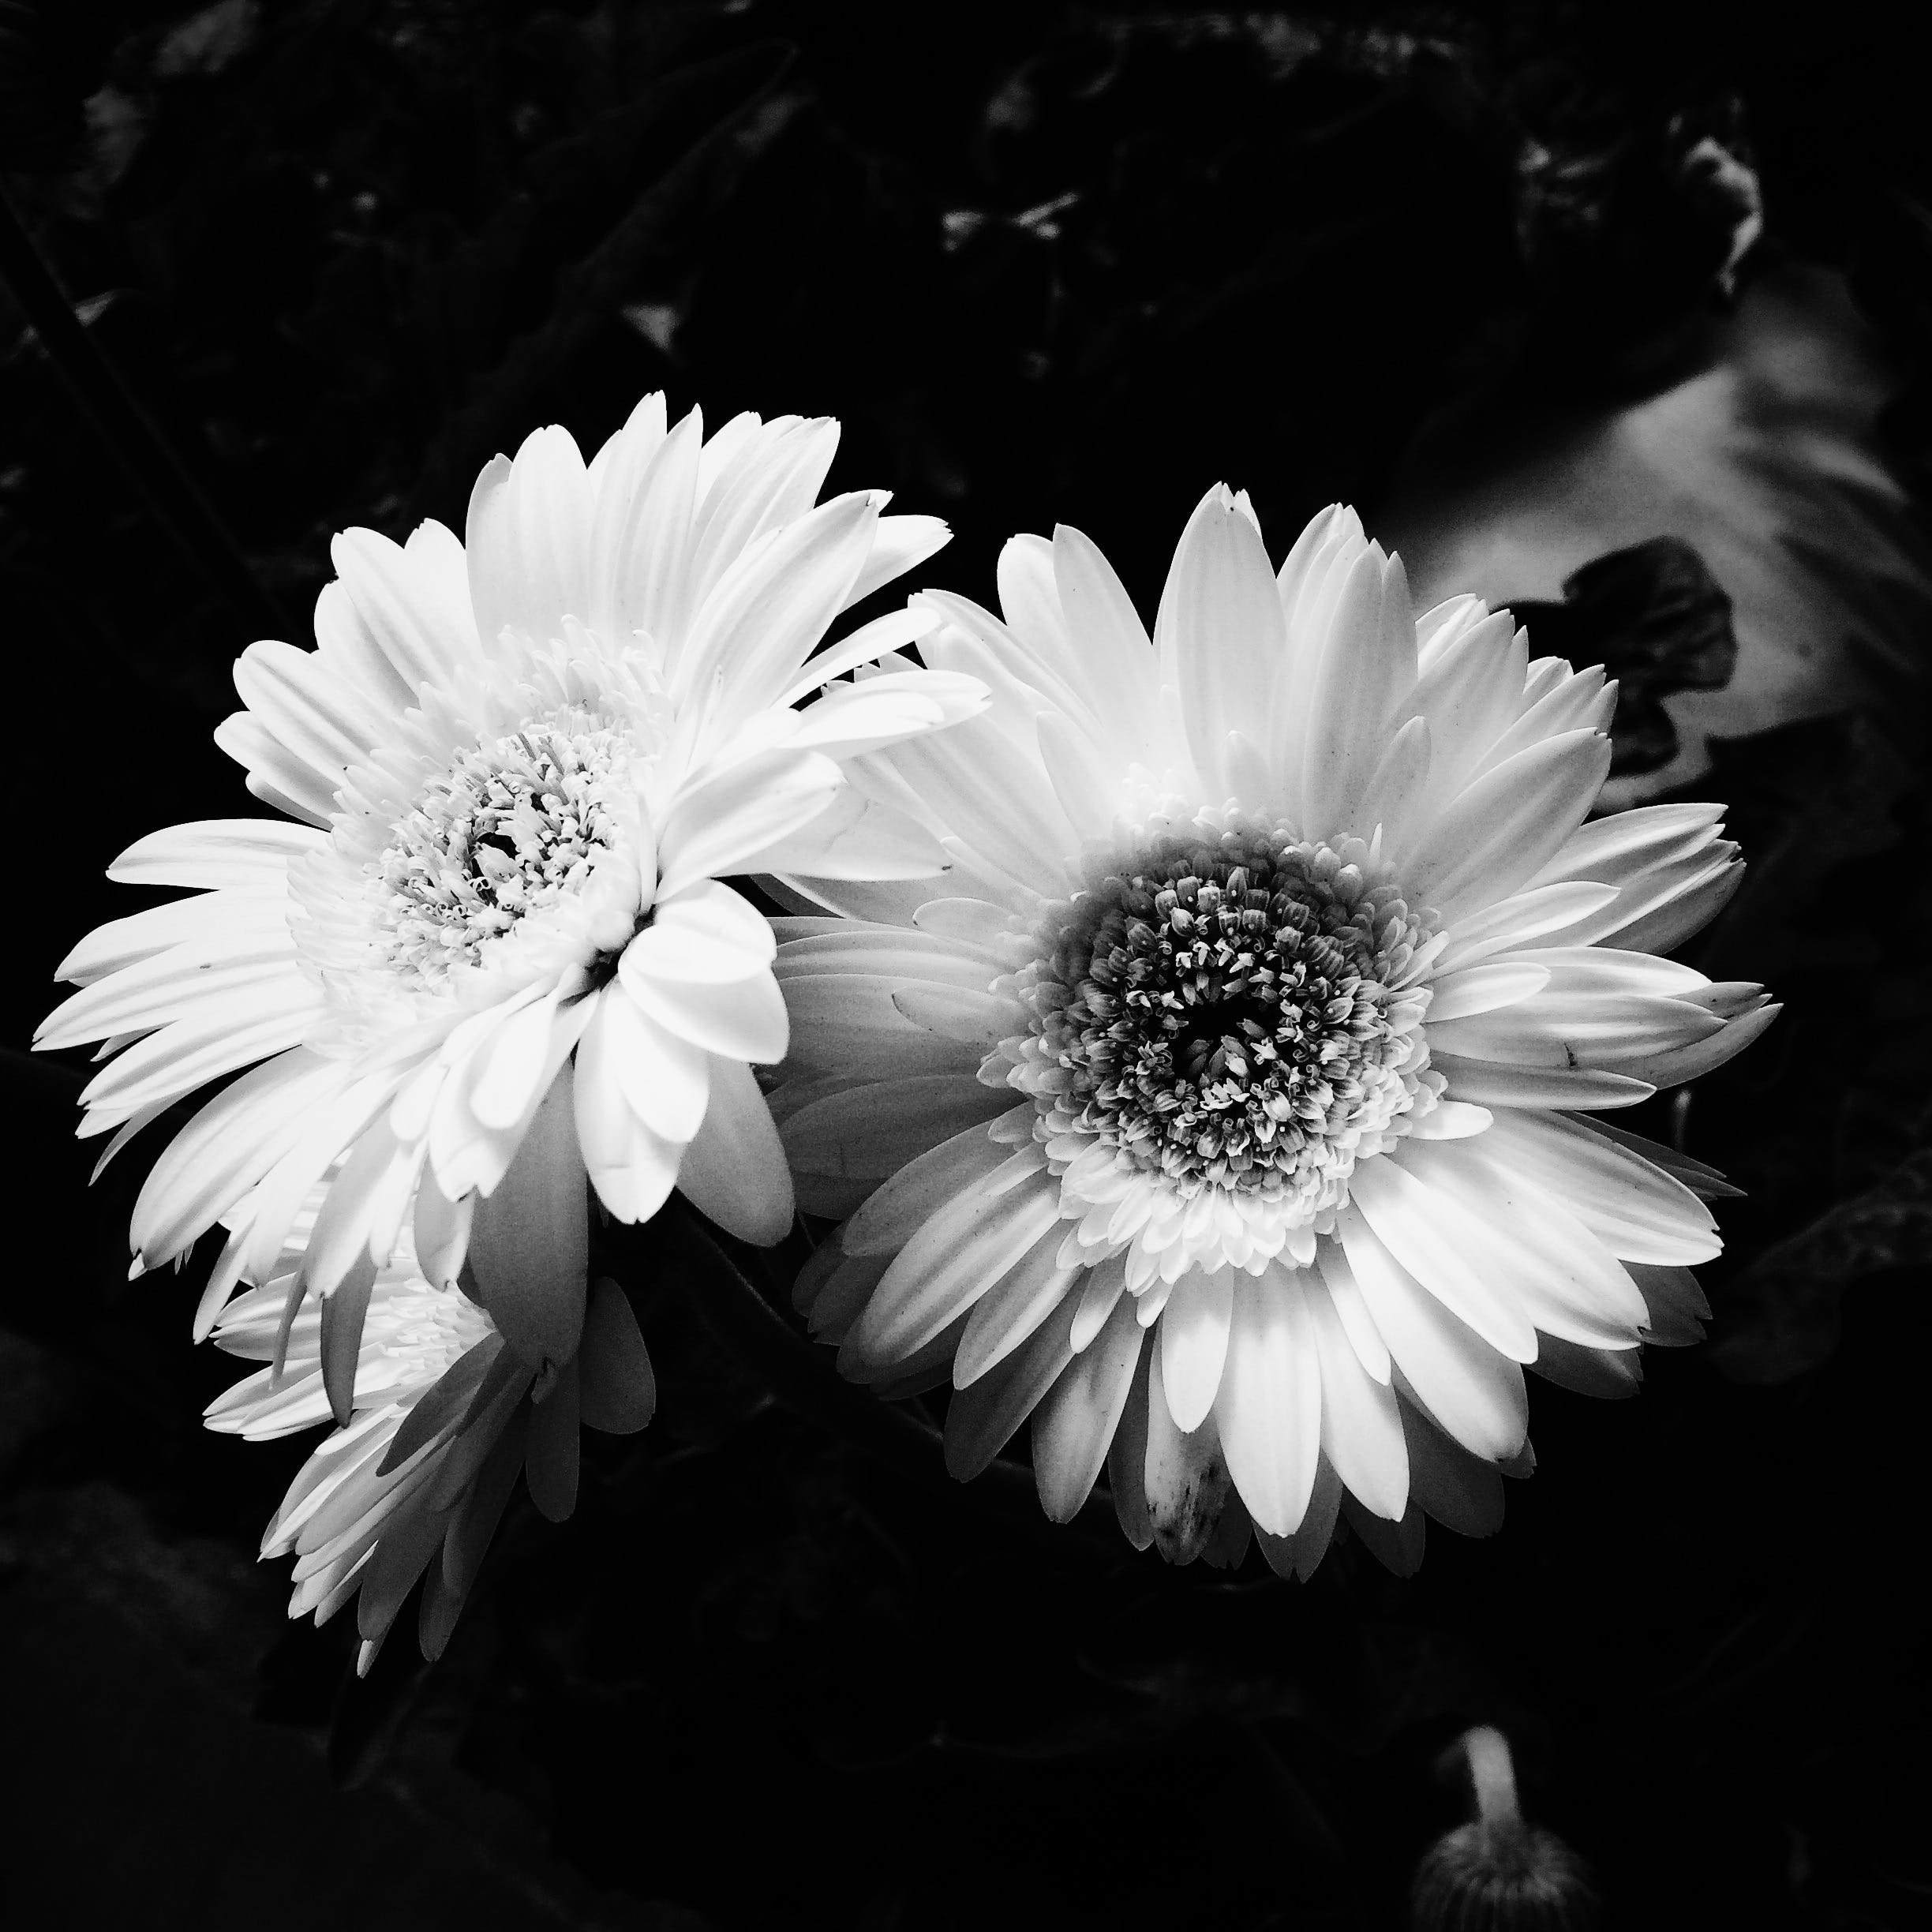 Фото черный цвет и белый цвет